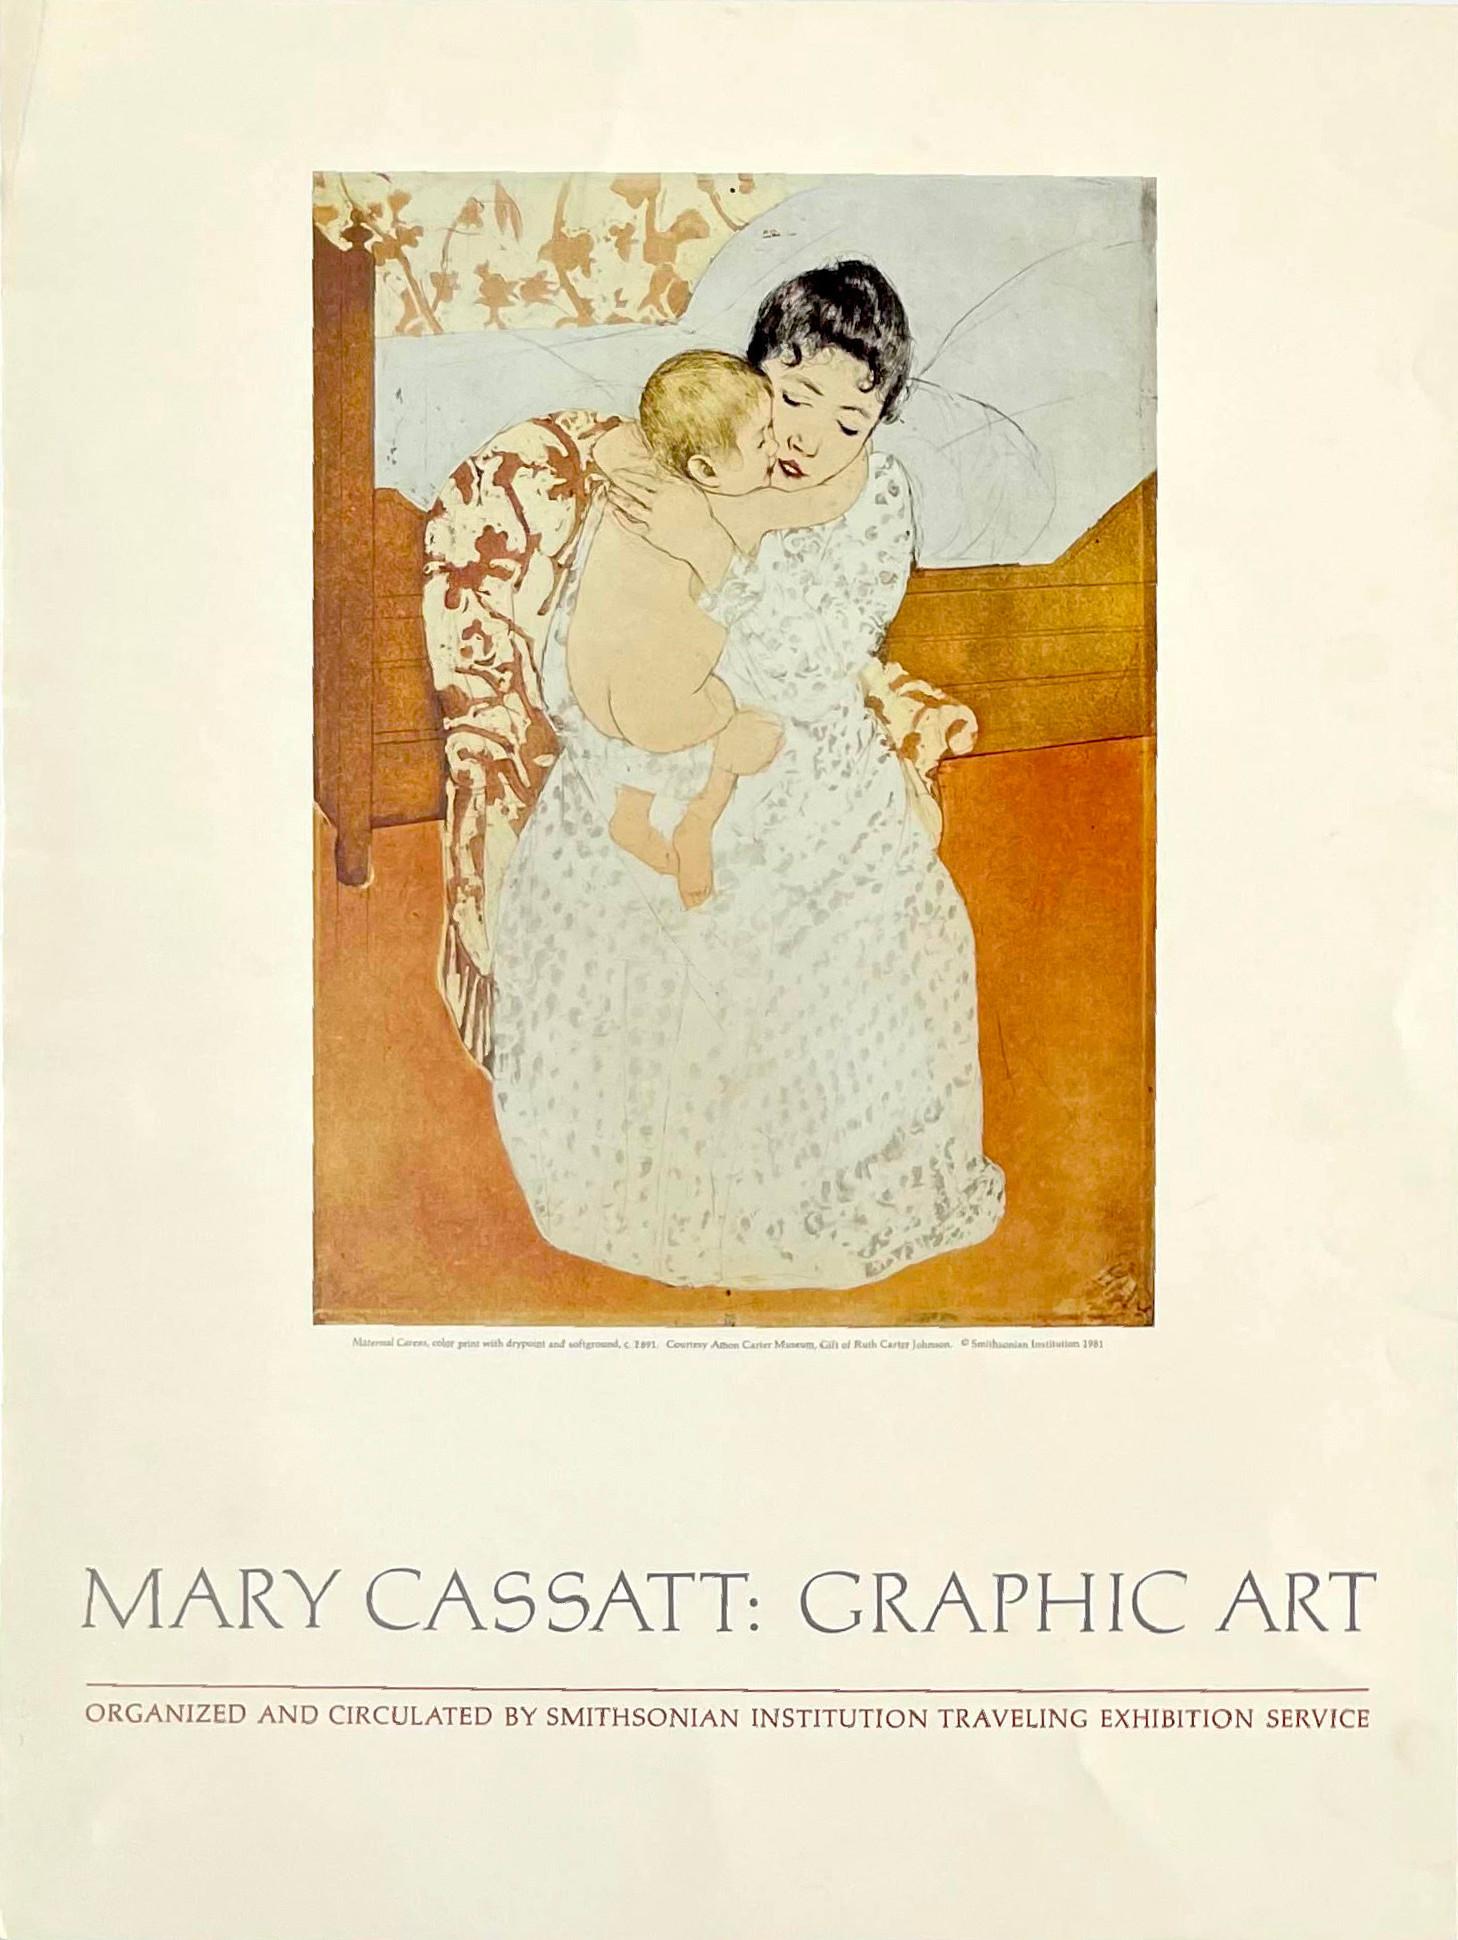 Mary Cassatt
Mary Cassatt : Graphic Art at Smithsonian Institution Traveling Exhibition poster, 1981
Affiche en lithographie offset
22 × 18 pouces
Non encadré et non signé
Cette affiche a été publiée dans le cadre de l'exposition Mary Cassatt :